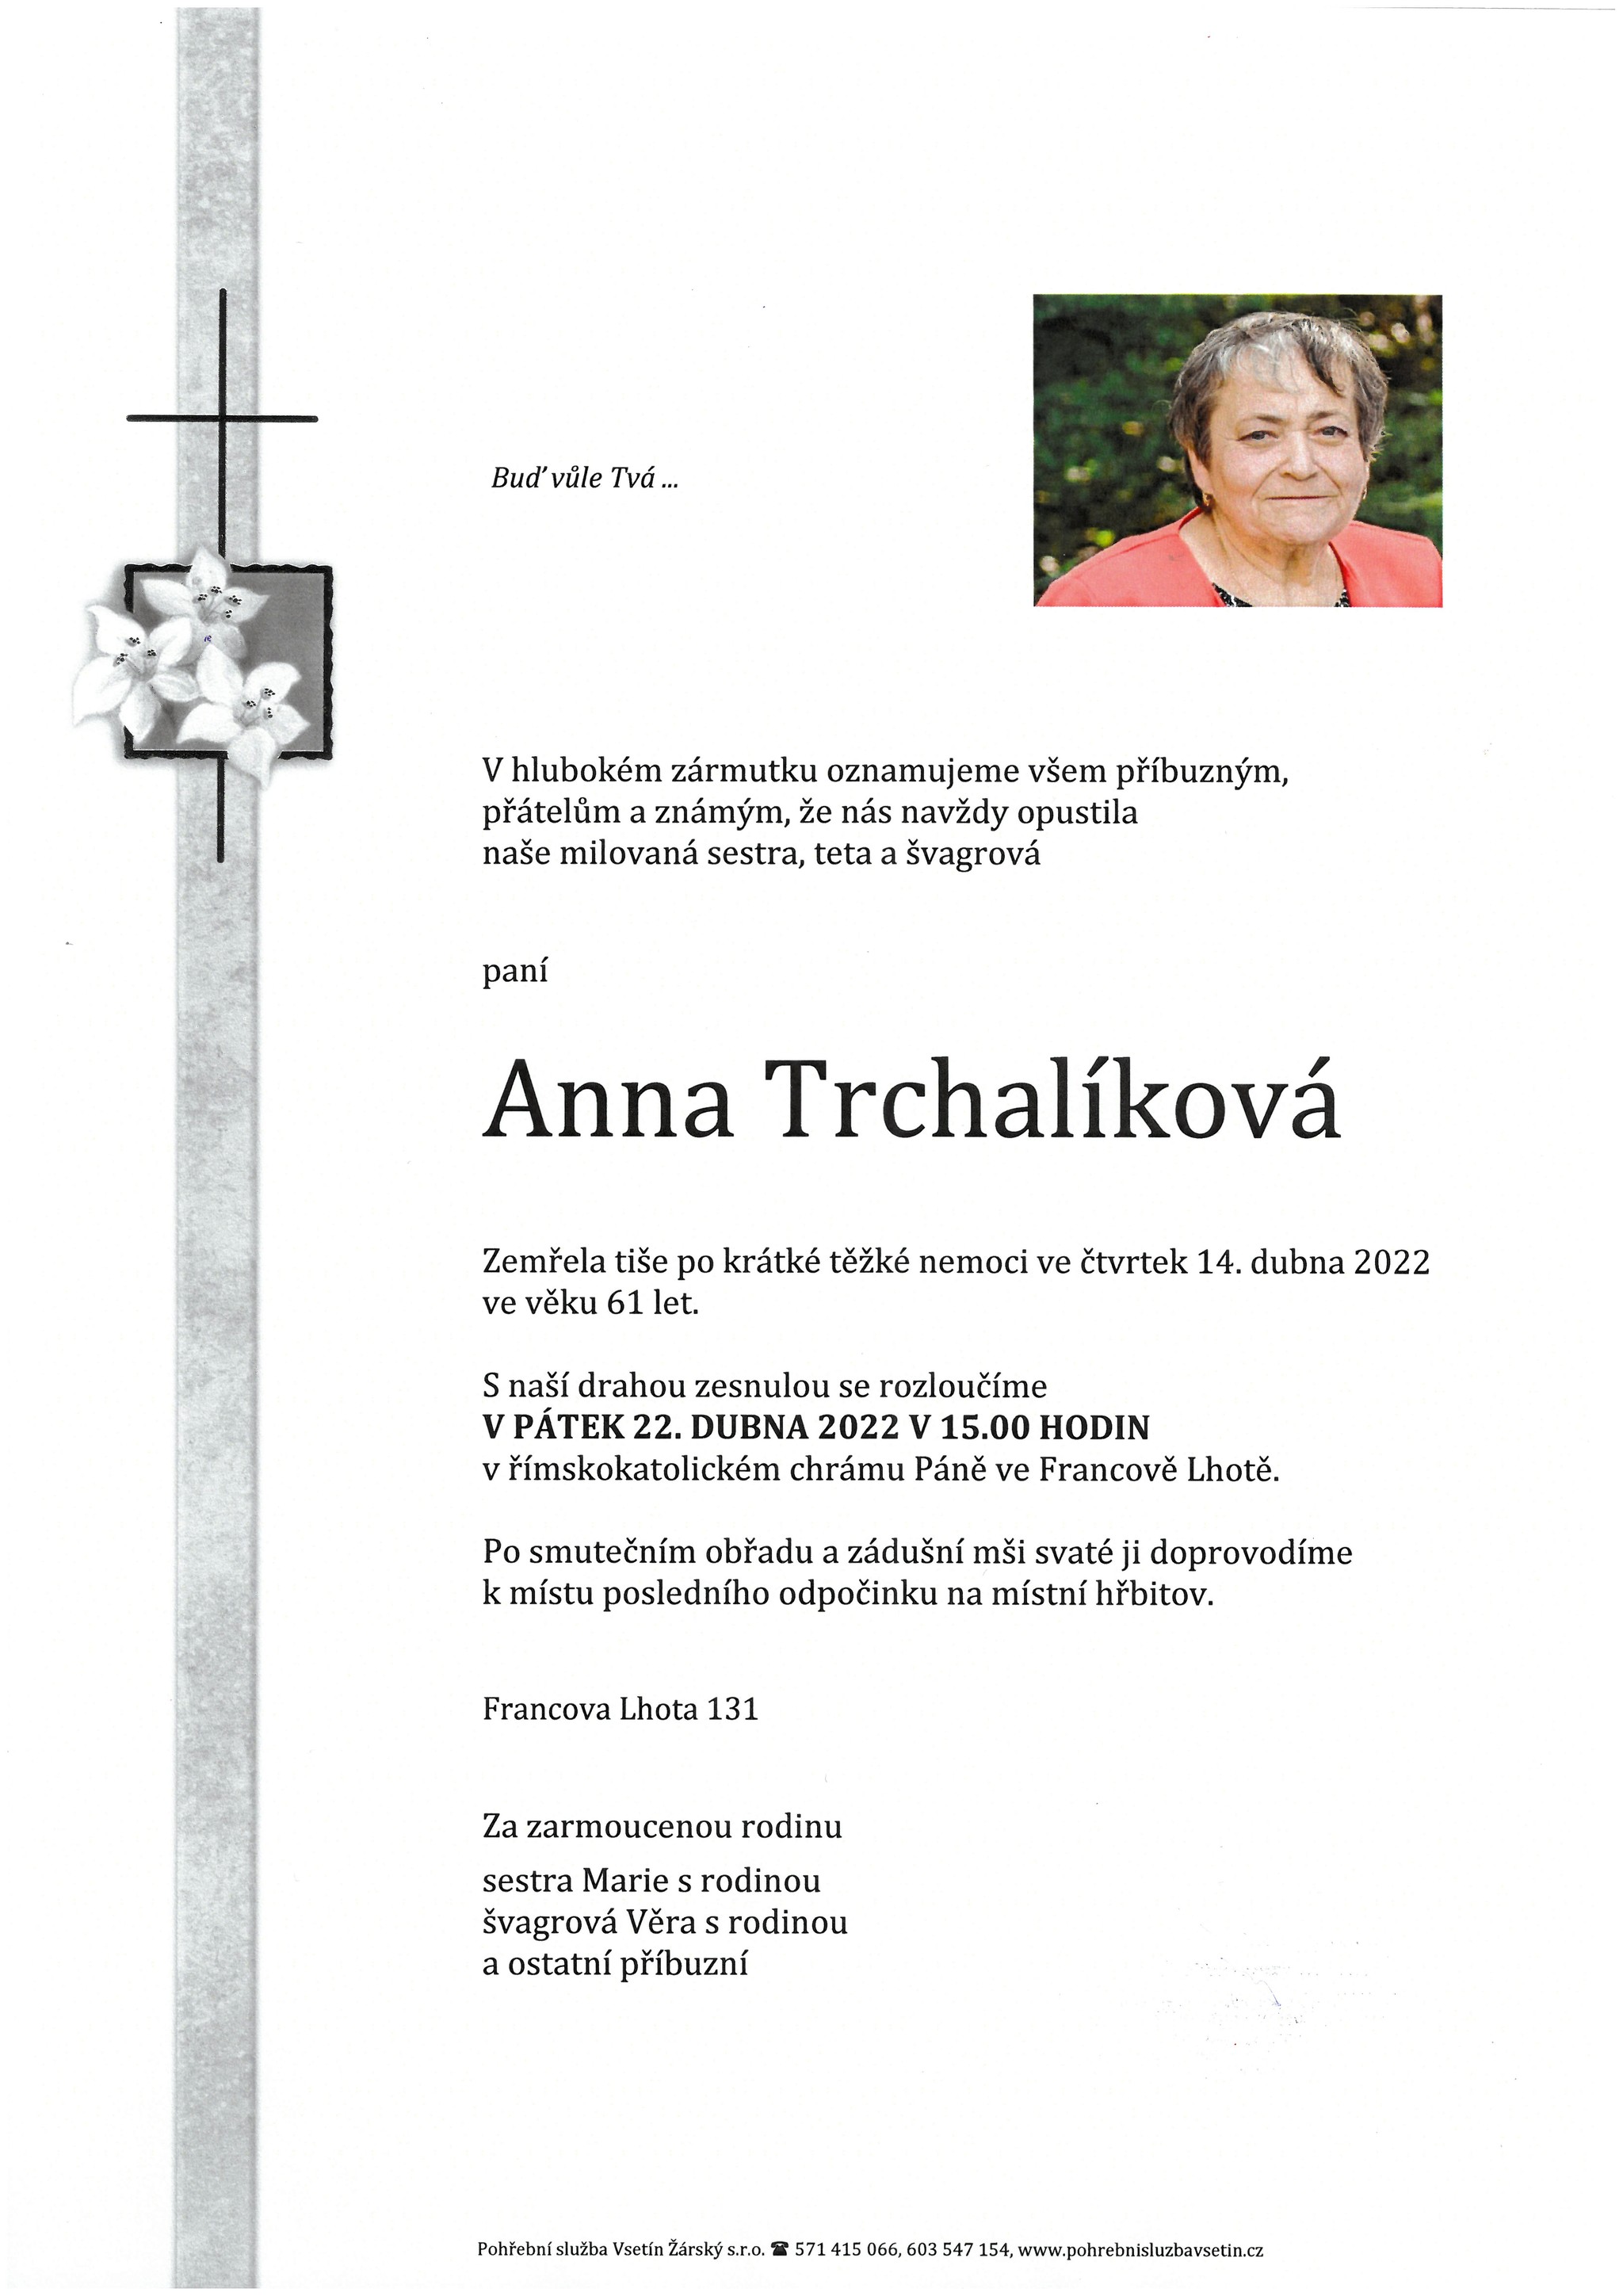 Anna Trchalíková